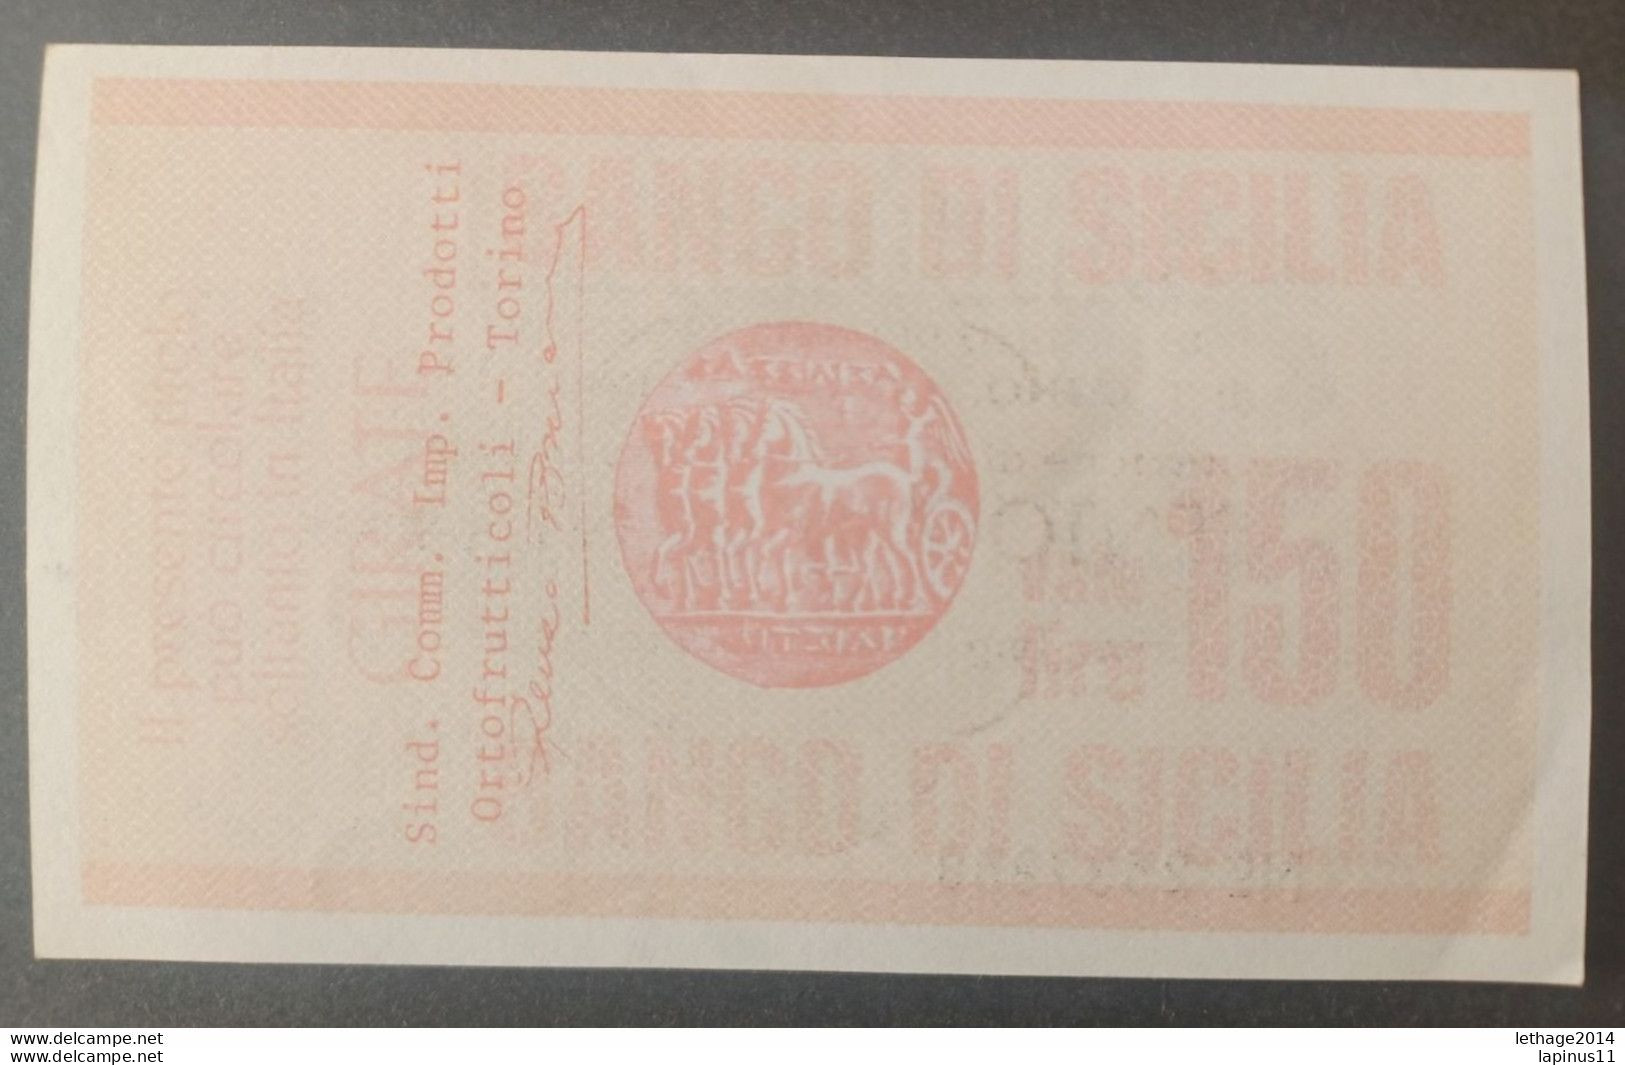 BANKNOTE ITALY MINICHECKS 150 LIRE BANCO DI SICILIA 1977 FDS - [10] Chèques